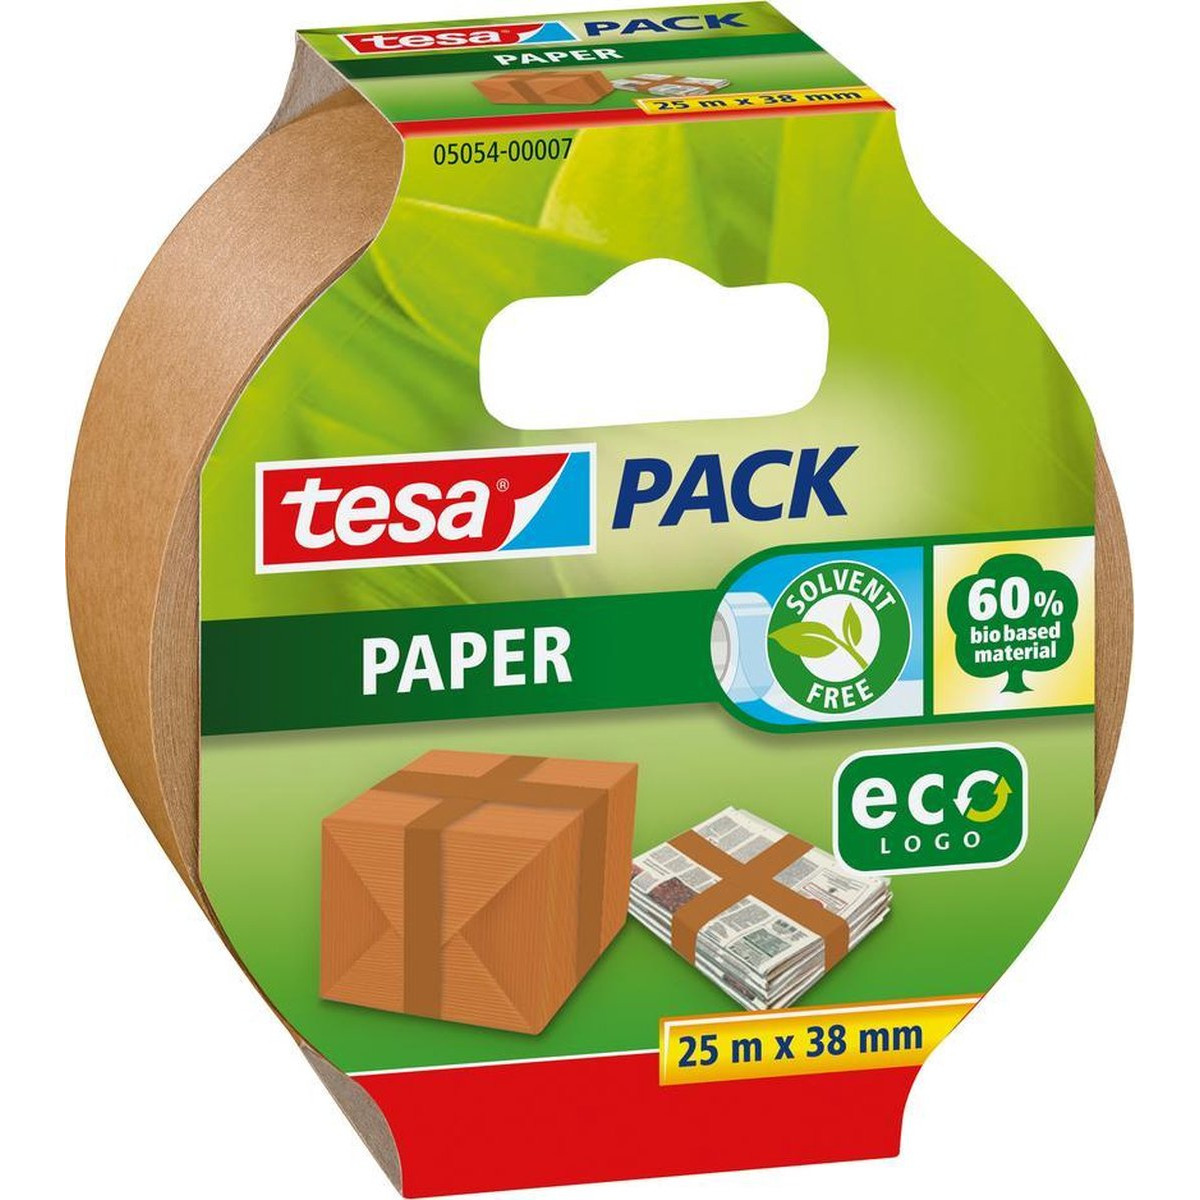 1x Tesa bruine verpakkingstape milieuvriendelijk 25 mtr x 38 mm